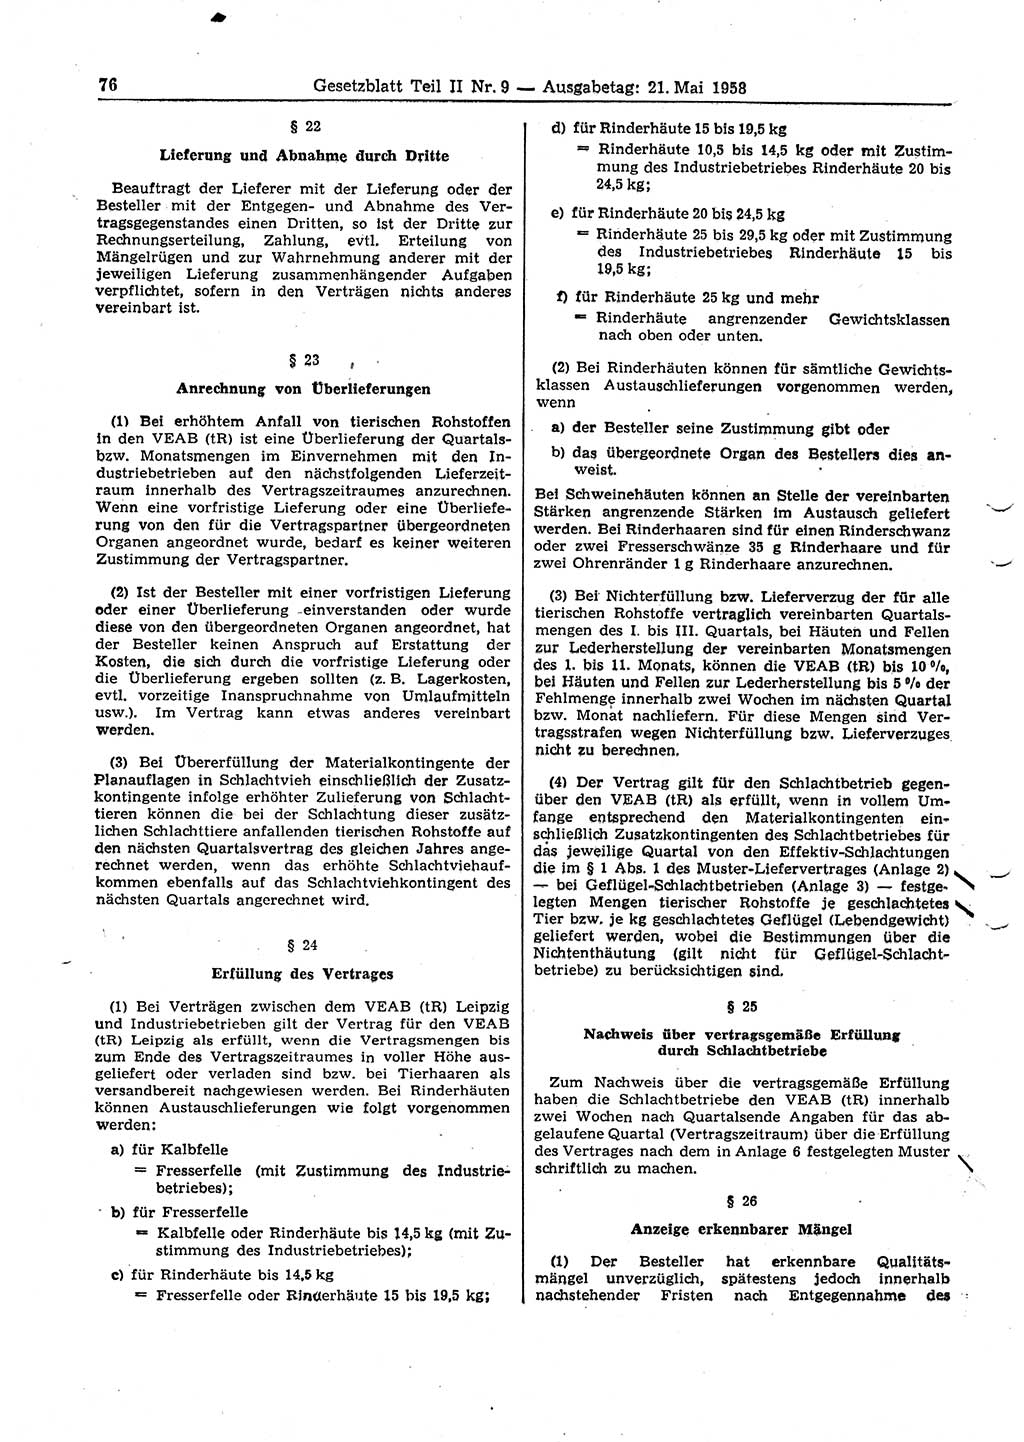 Gesetzblatt (GBl.) der Deutschen Demokratischen Republik (DDR) Teil ⅠⅠ 1958, Seite 76 (GBl. DDR ⅠⅠ 1958, S. 76)